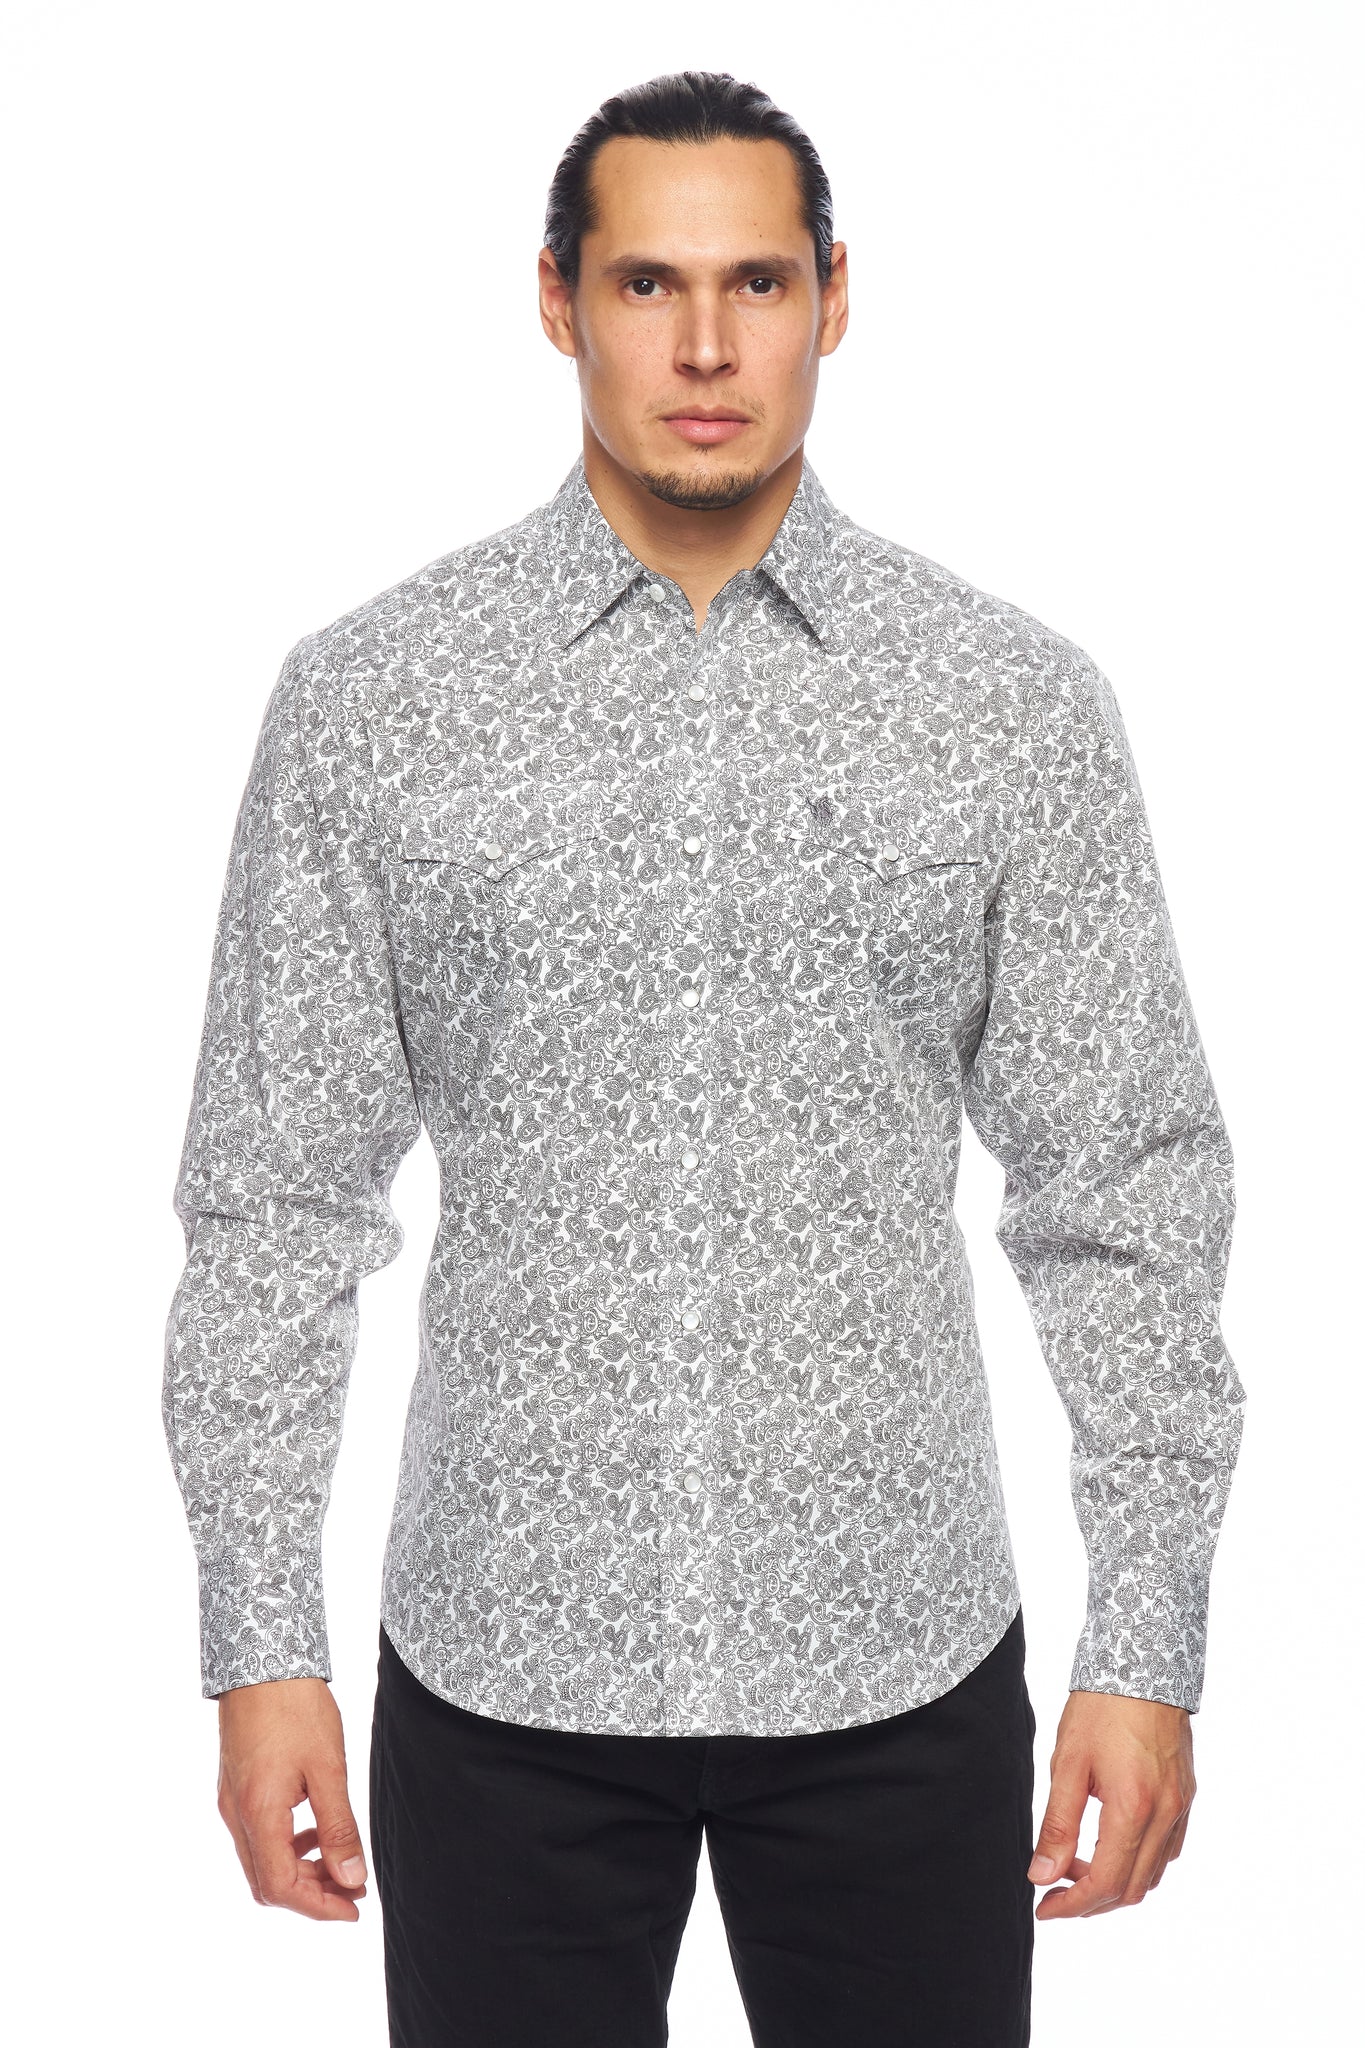 Camisas occidentales con estampado de algodón de manga larga y botones a presión para hombre